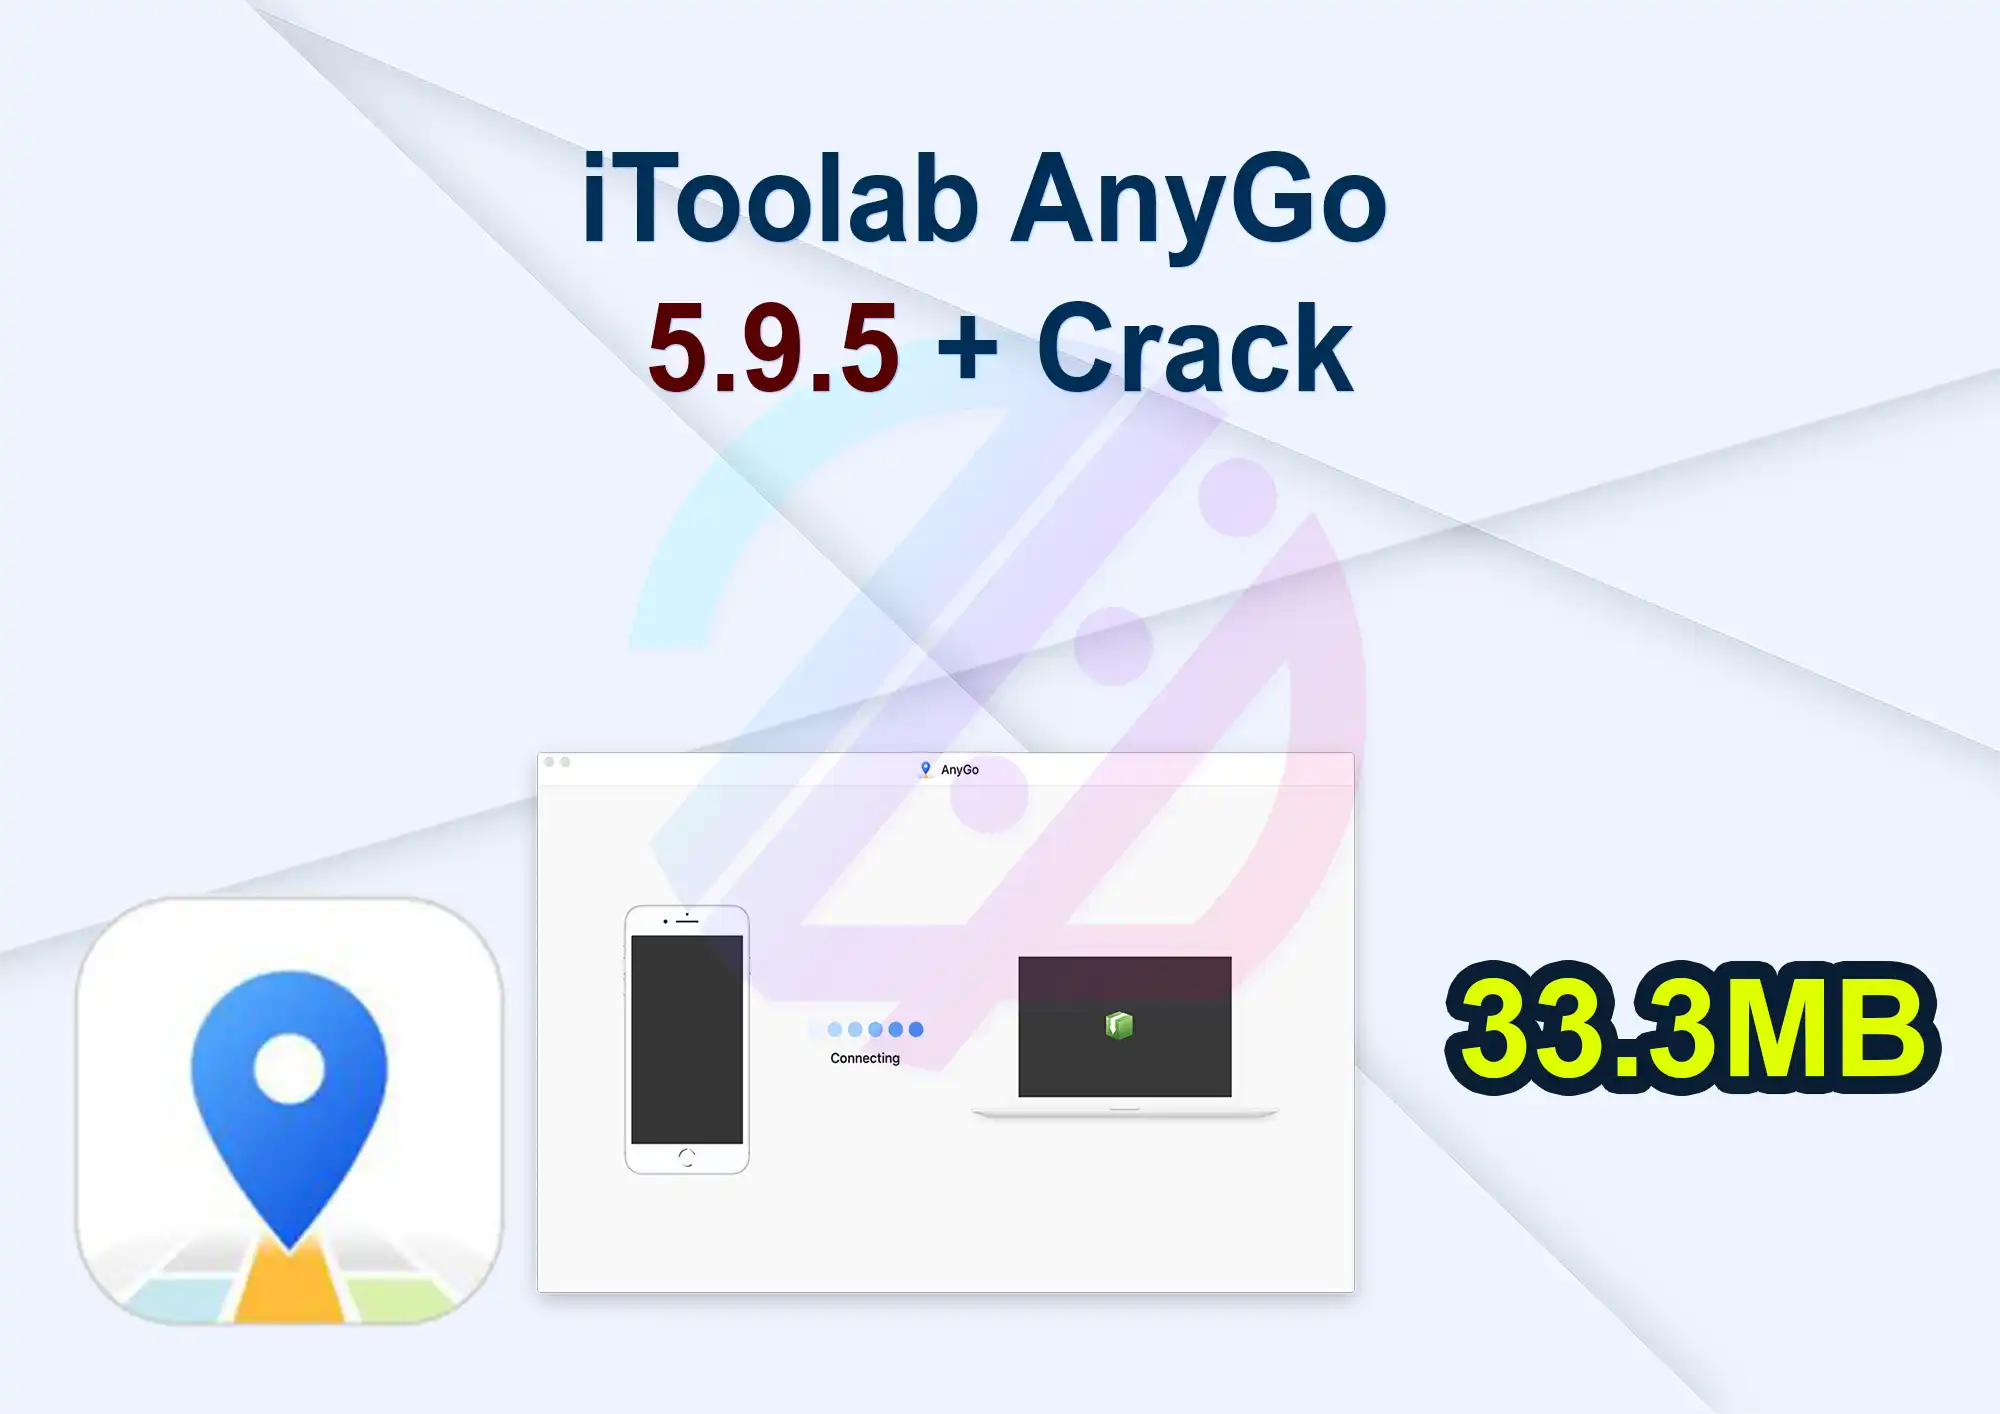 iToolab AnyGo 5.9.5 + Crack